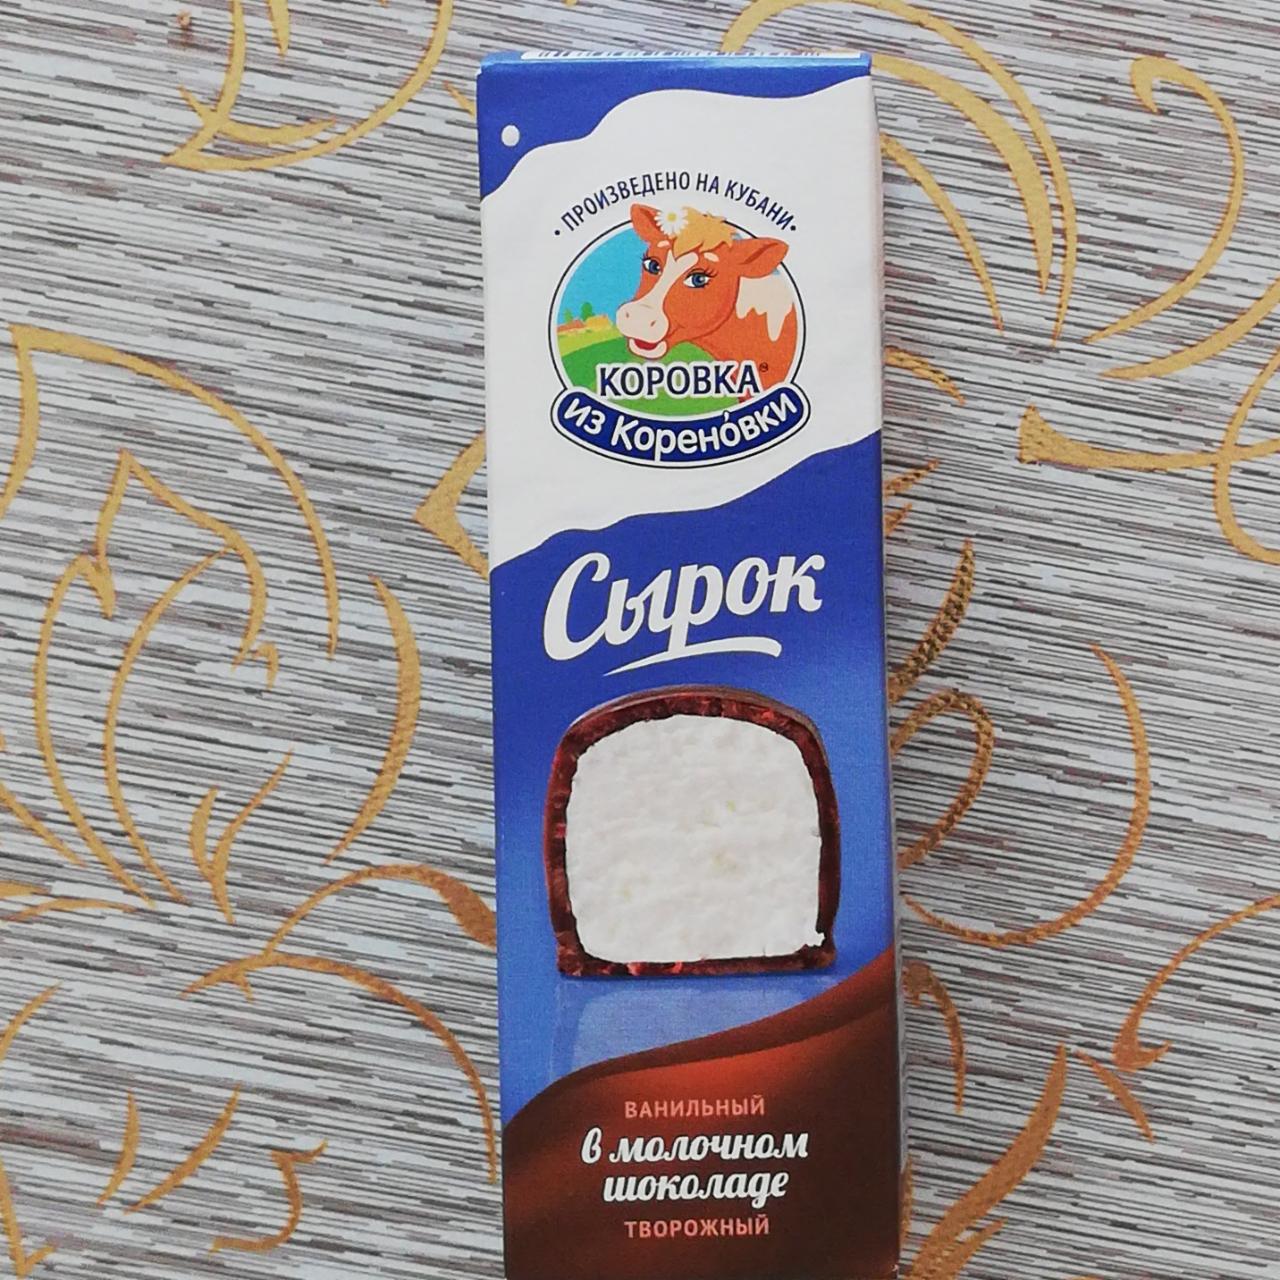 Фото - сырок творожный ванильный глазированный в молочном шоколаде Коровка из Кореновки